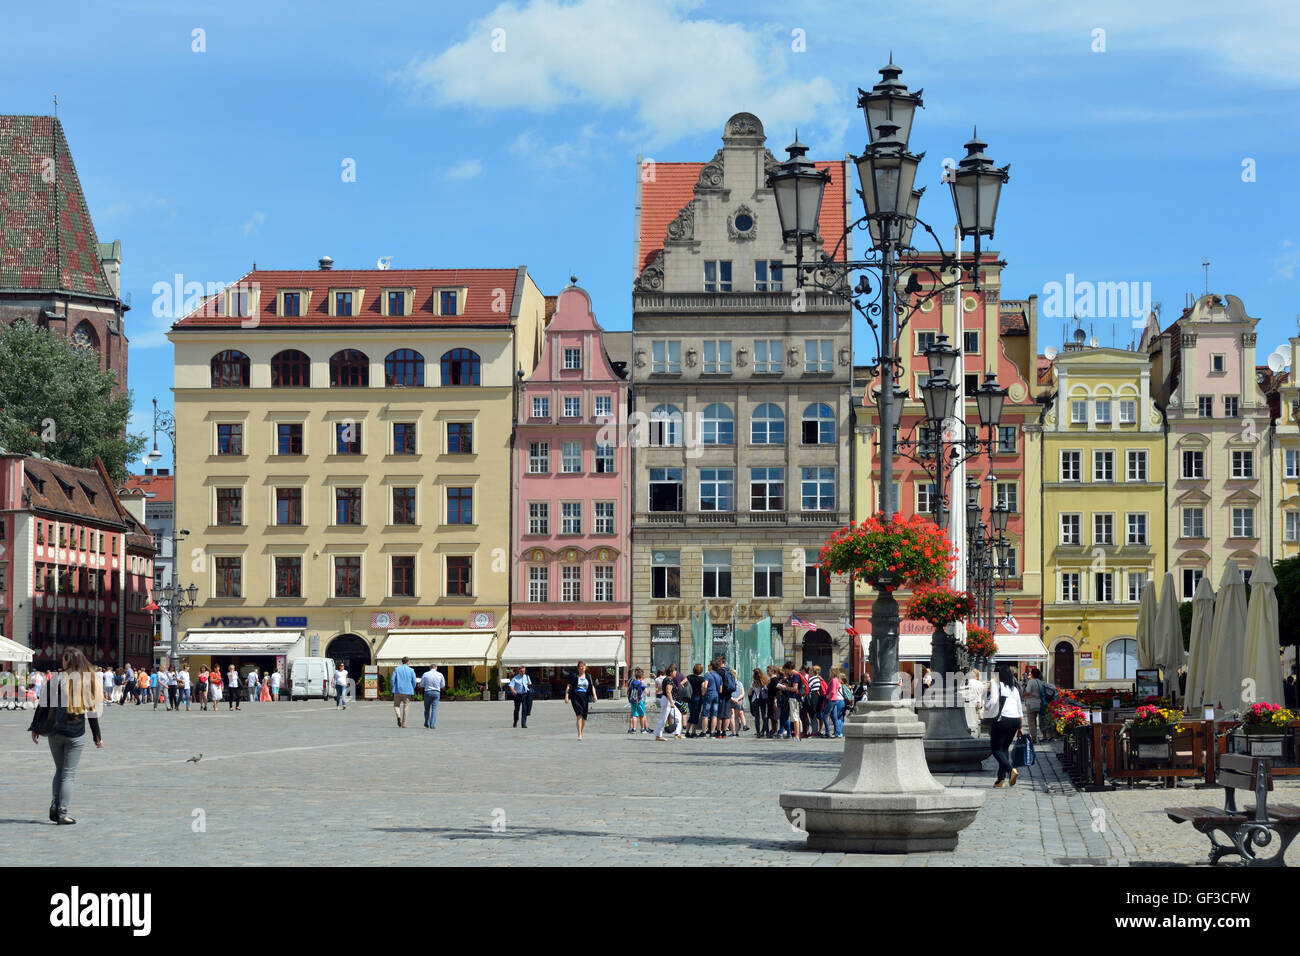 La gente a piedi in Piazza del Mercato nel centro storico della Città Vecchia di Wroclaw - Polonia. Foto Stock